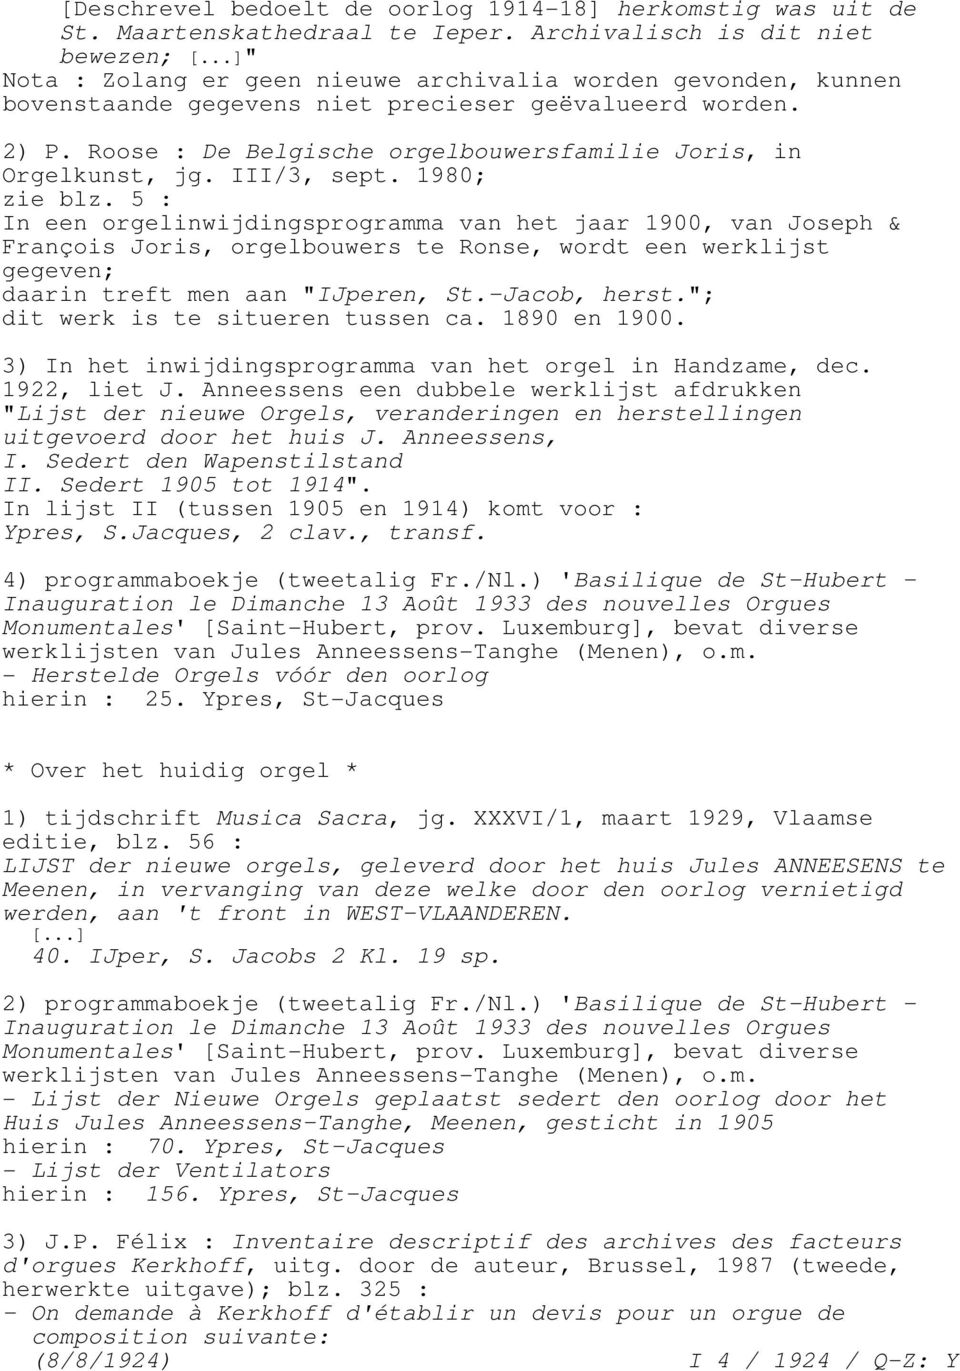 III/3, sept. 1980; zie blz. 5 : In een orgelinwijdingsprogramma van het jaar 1900, van Joseph & François Joris, orgelbouwers te Ronse, wordt een werklijst gegeven; daarin treft men aan "IJperen, St.